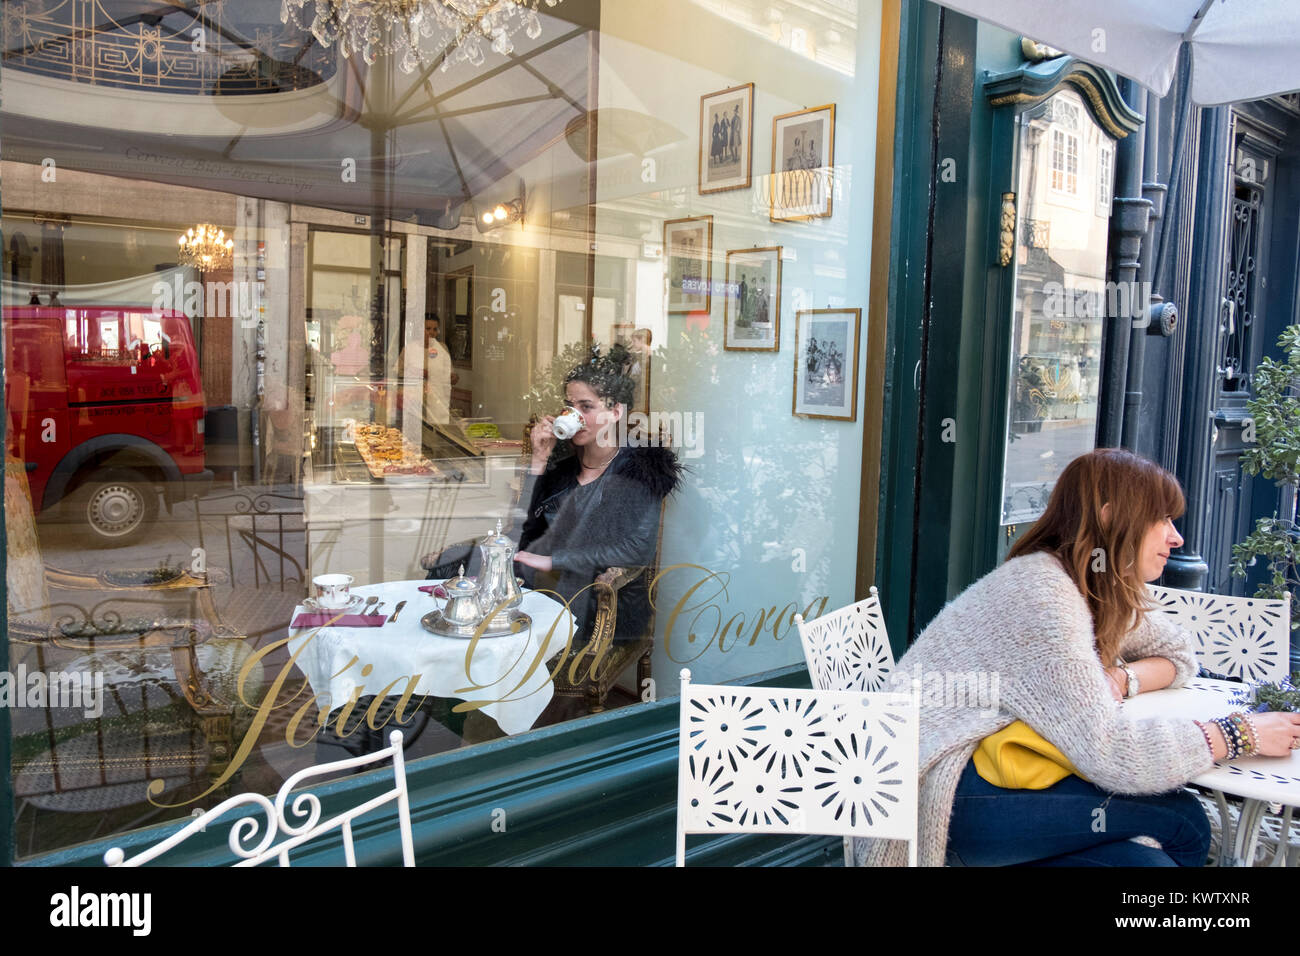 Joia Da Coroa cafe in Porto, Portugal Stock Photo